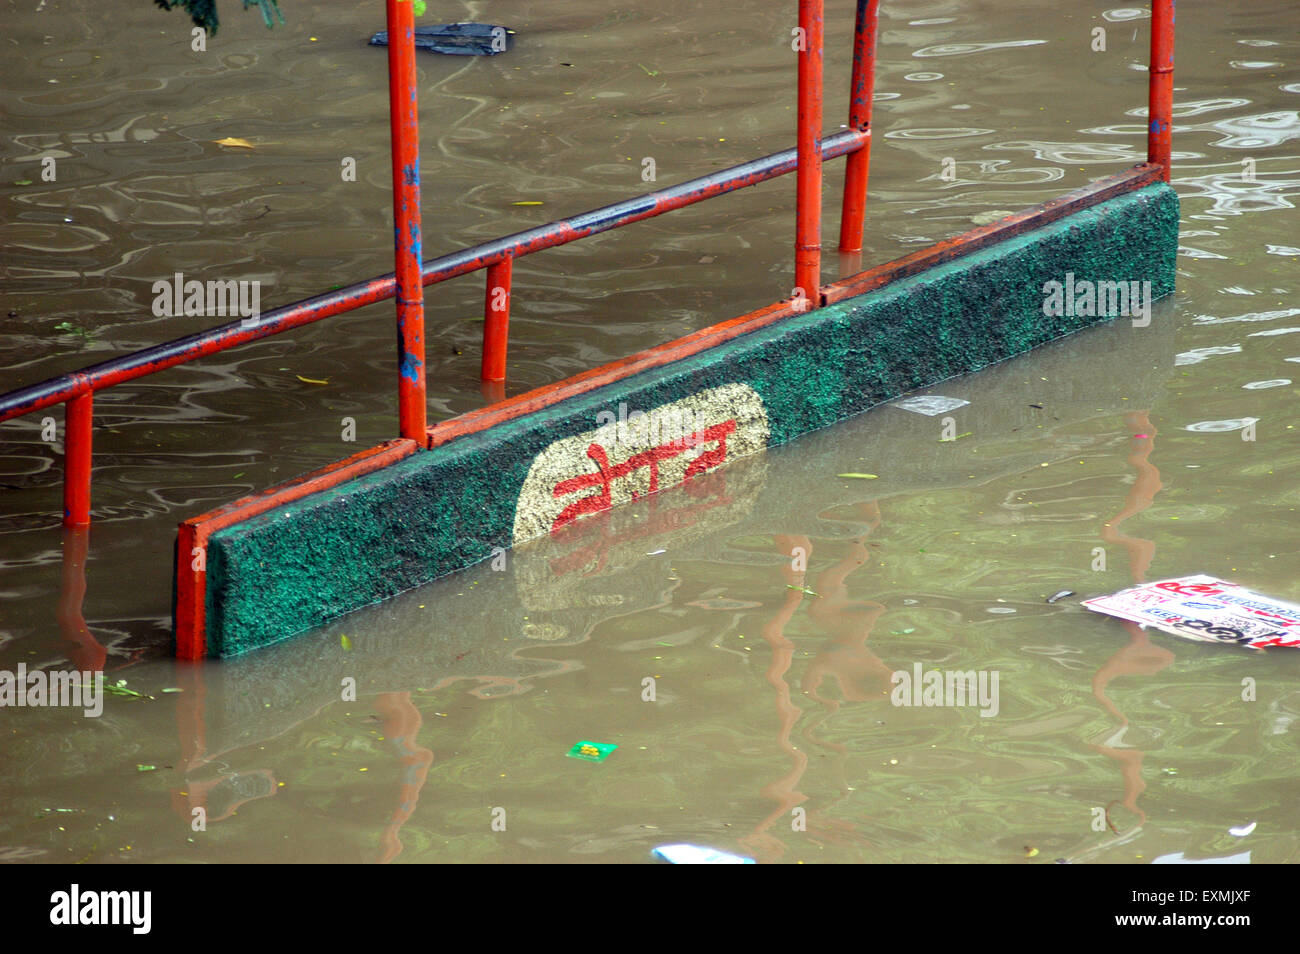 Alluvioni piovose monsoniche, MIGLIOR fermata di autobus sommerso allagato strada, Bombay, Mumbai, Maharashtra, India, Asia Foto Stock